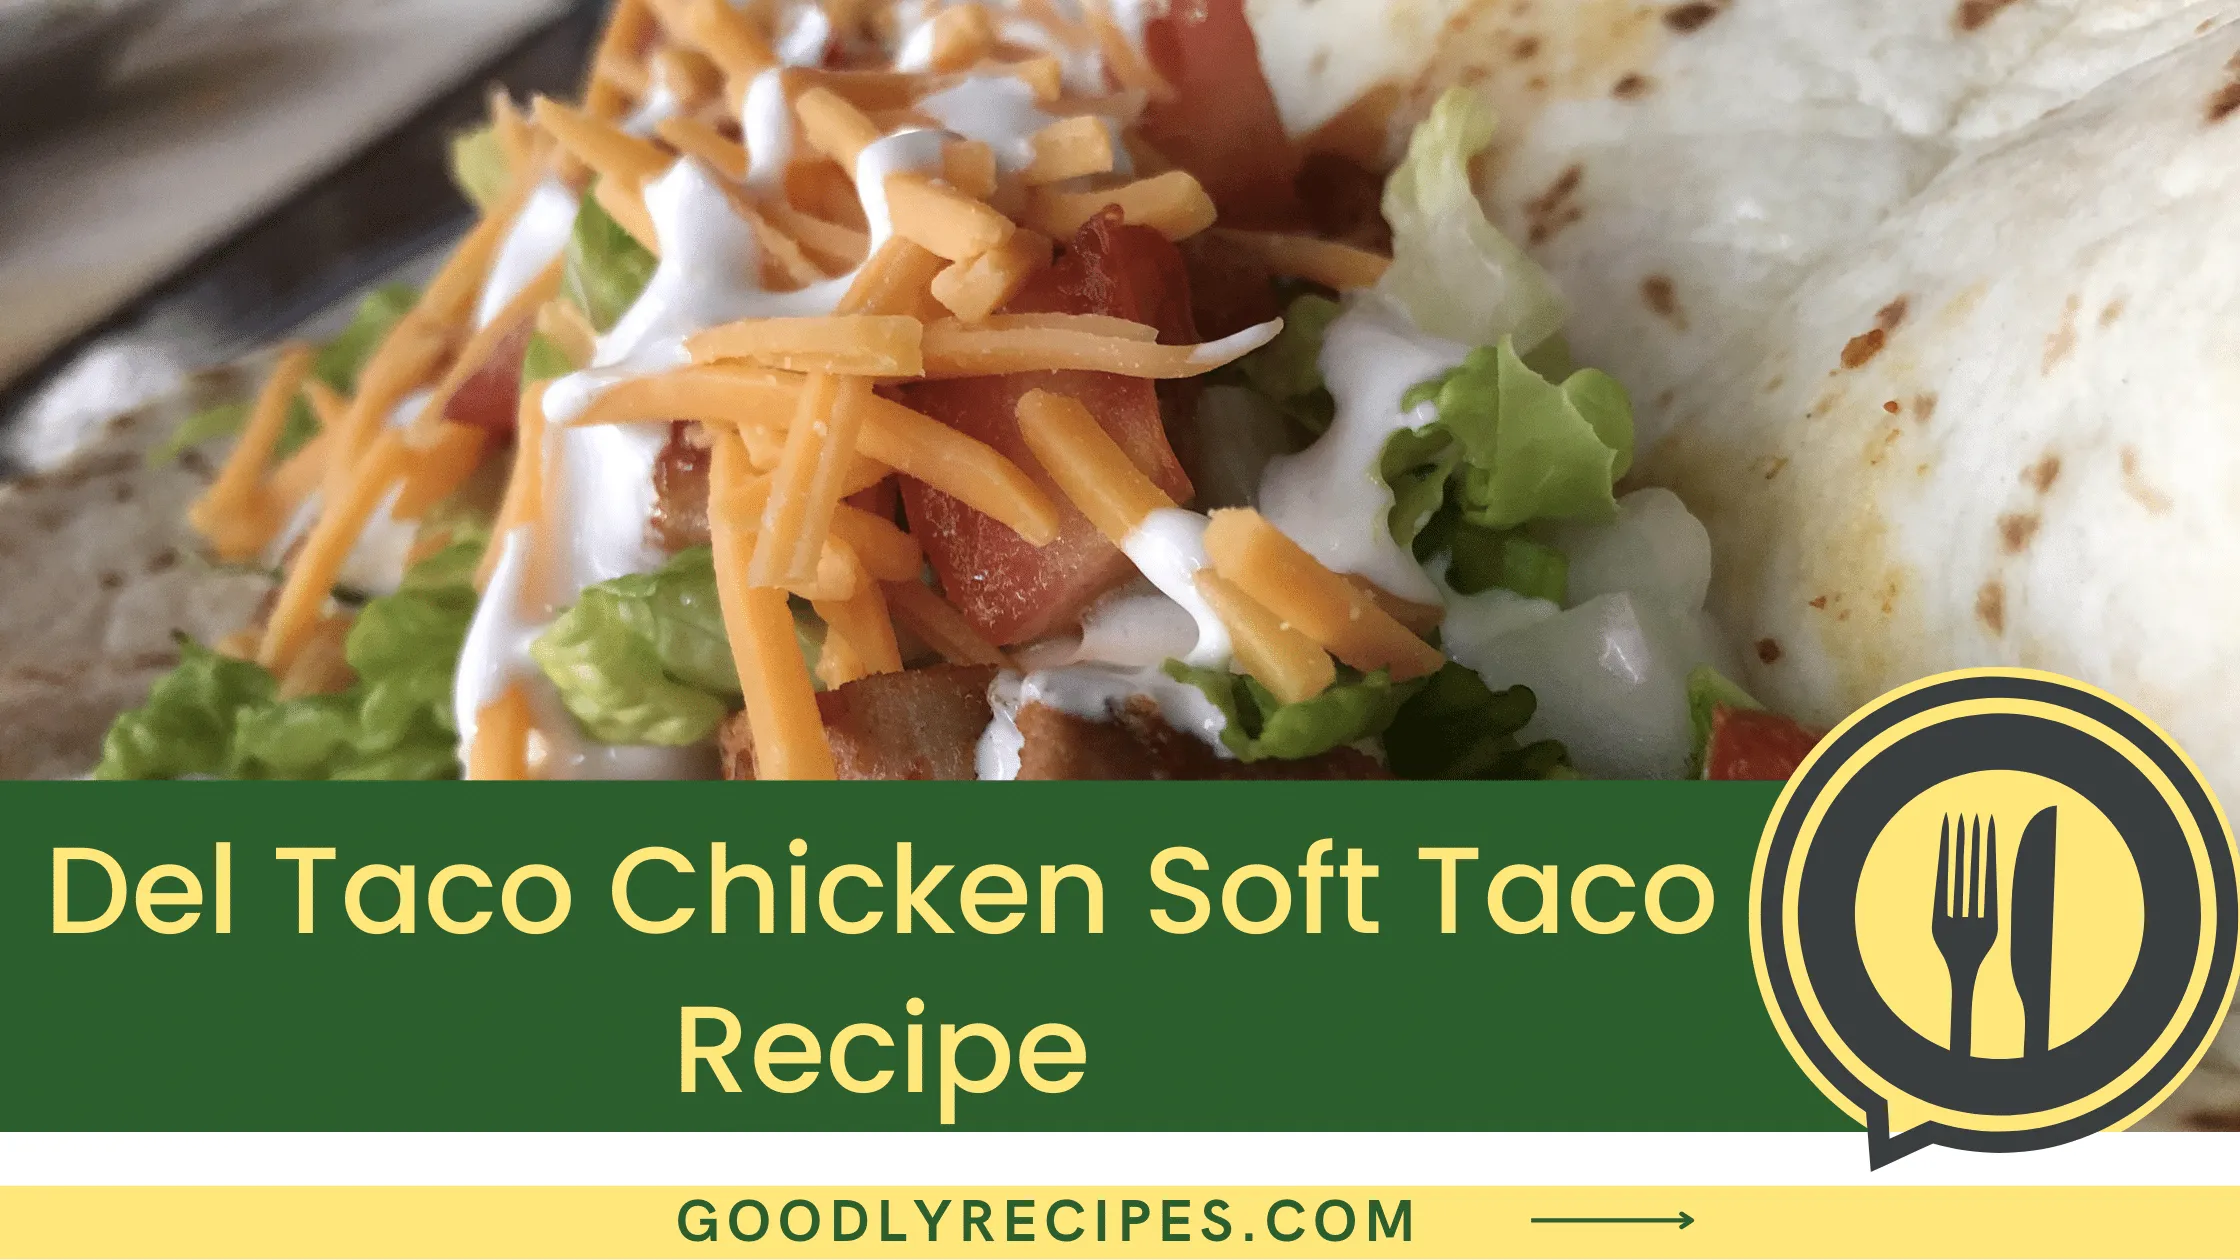 Del Taco Chicken Soft Taco Recipe